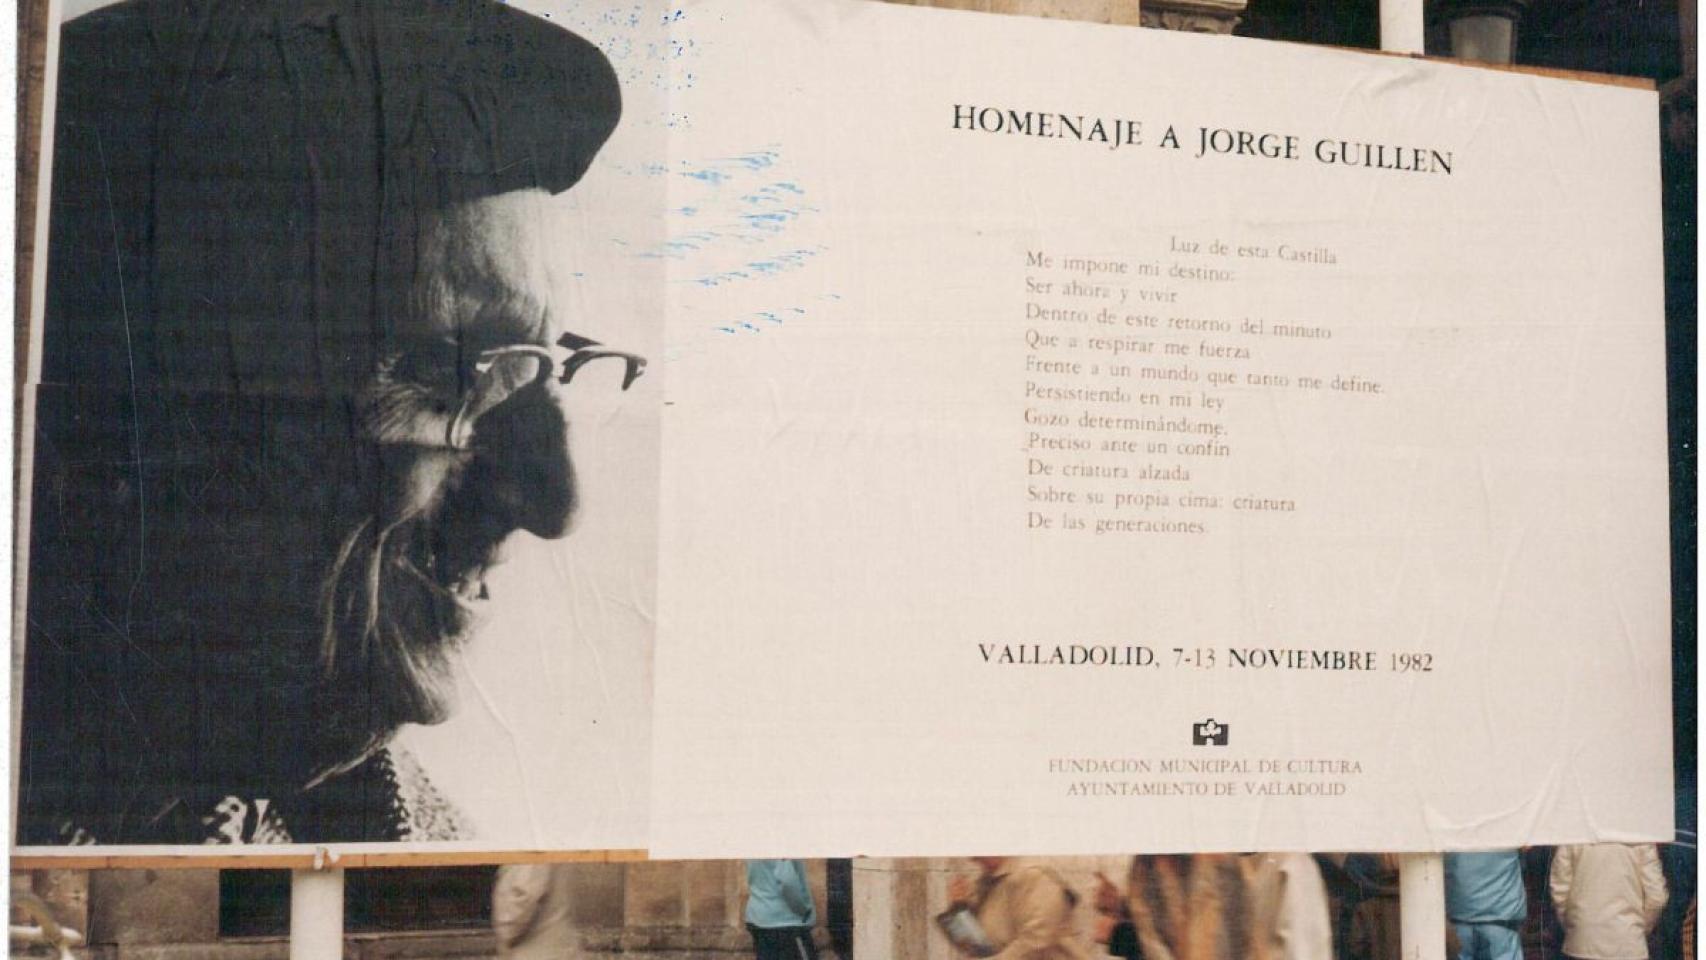 Cartel que anunciaba un homenaje a Jorge Guillén en Valladolid